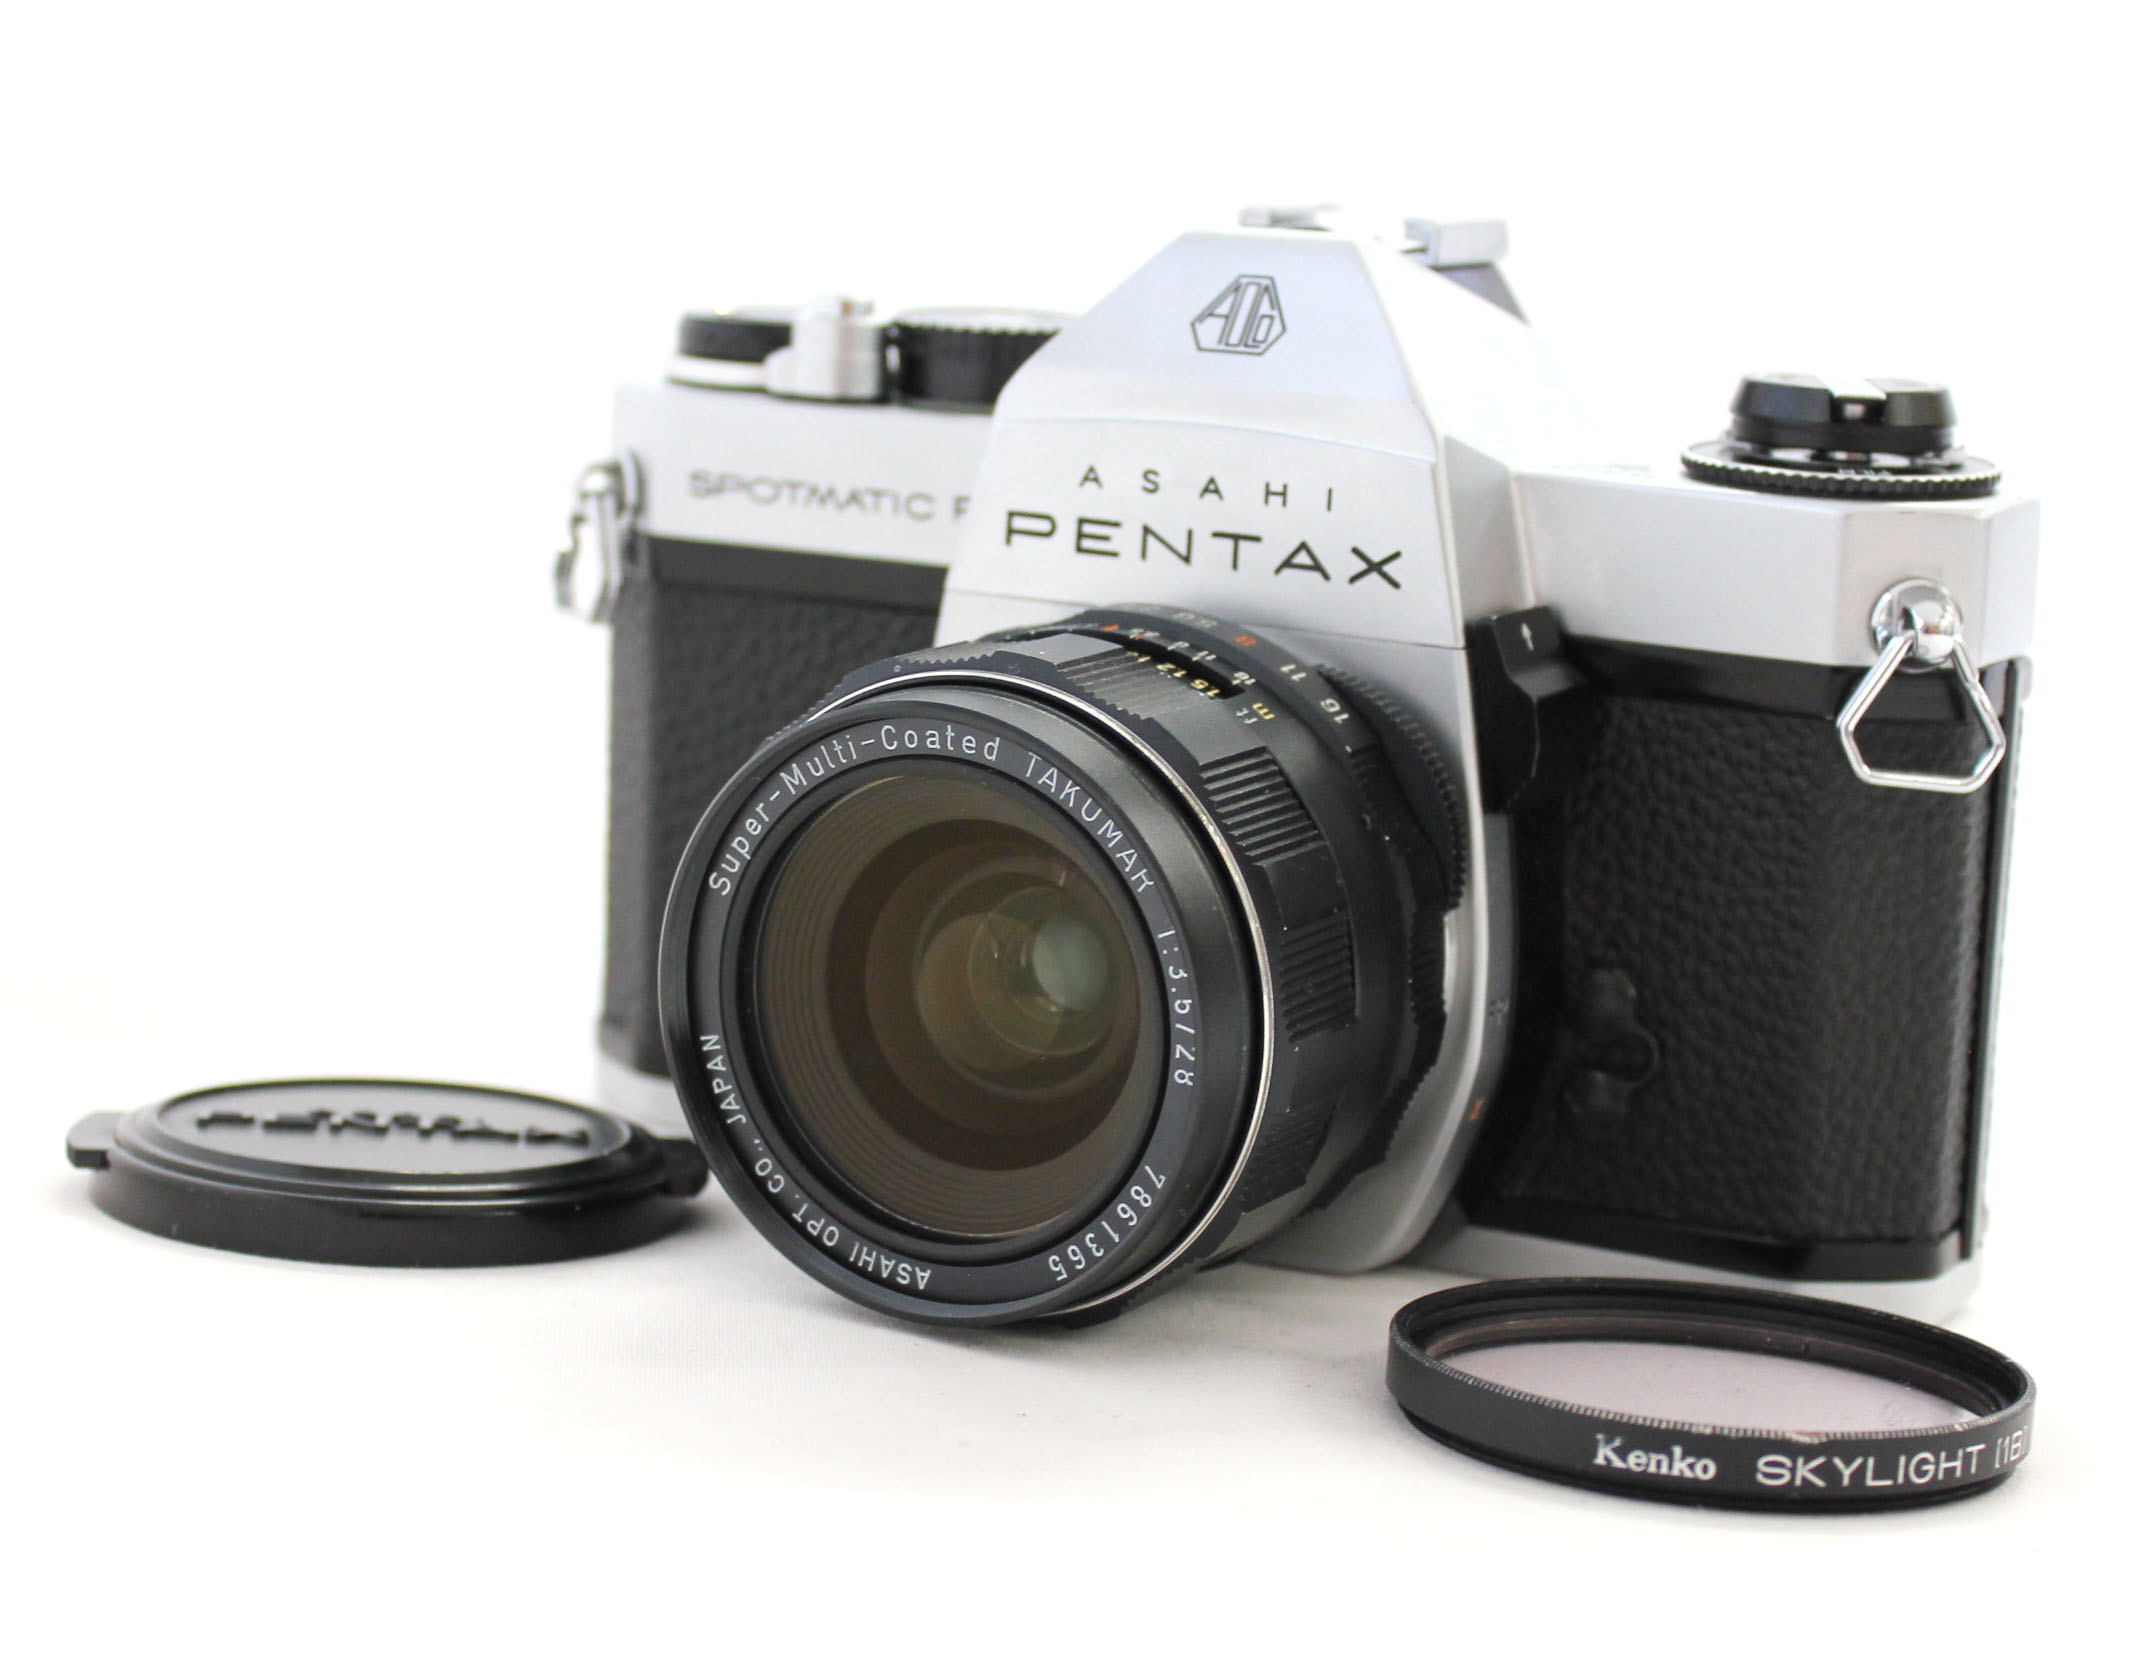 [Near Mint] Asahi Pentax Spotmatic F SPF 35mm SLR Camera w/ Super-Multi-Coated Takumar 28mm F/3.5 Lens from Japan